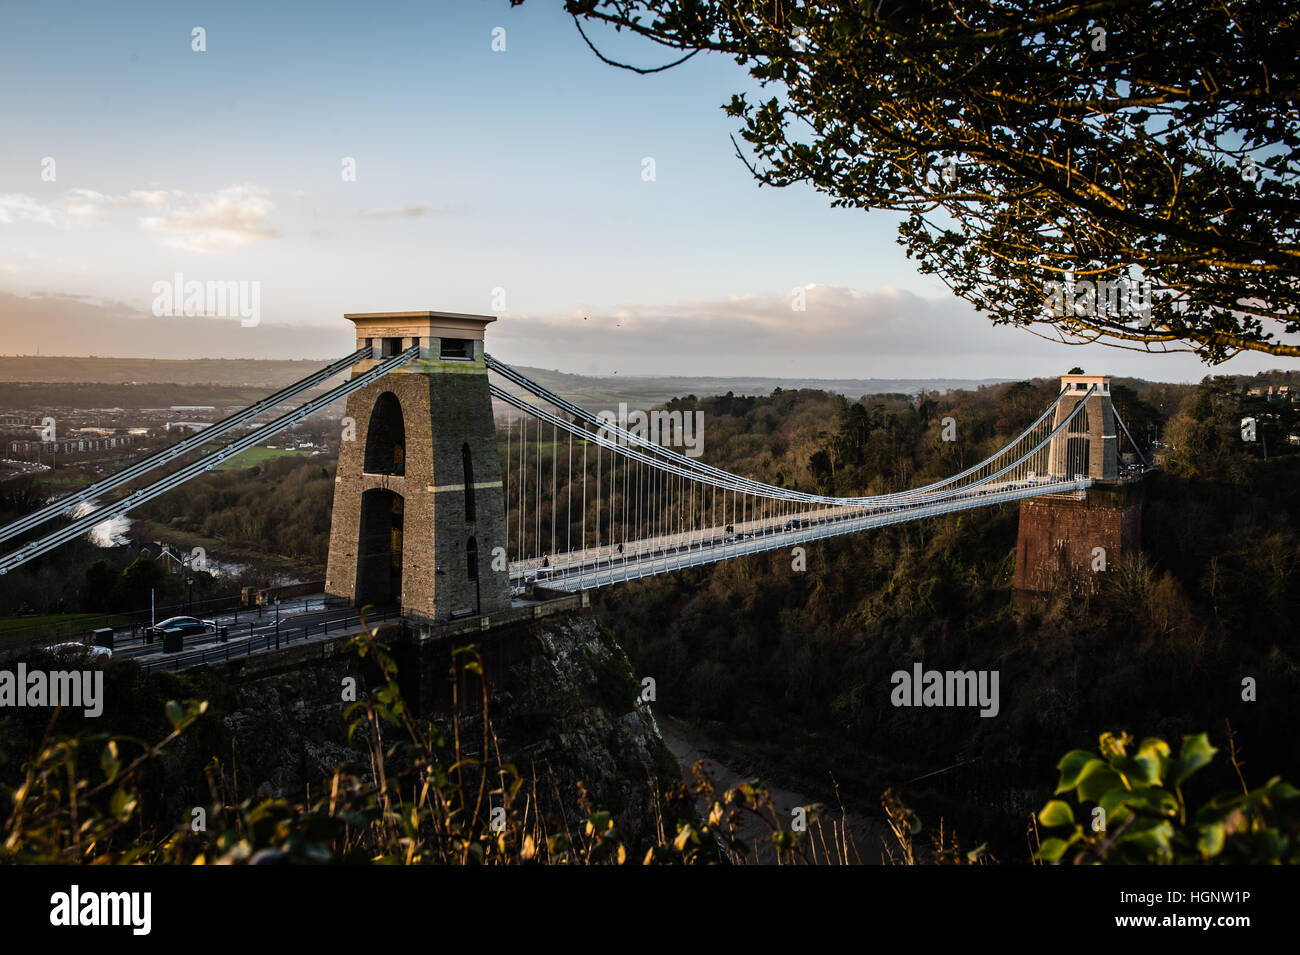 Clifton Suspension Bridge, Clifton Downs, Bristol. PRESSEVERBAND Foto. Bild Datum: Mittwoch, 11. Januar 2017. Bildnachweis sollte lauten: Ben Birchall/PA Wire Stockfoto